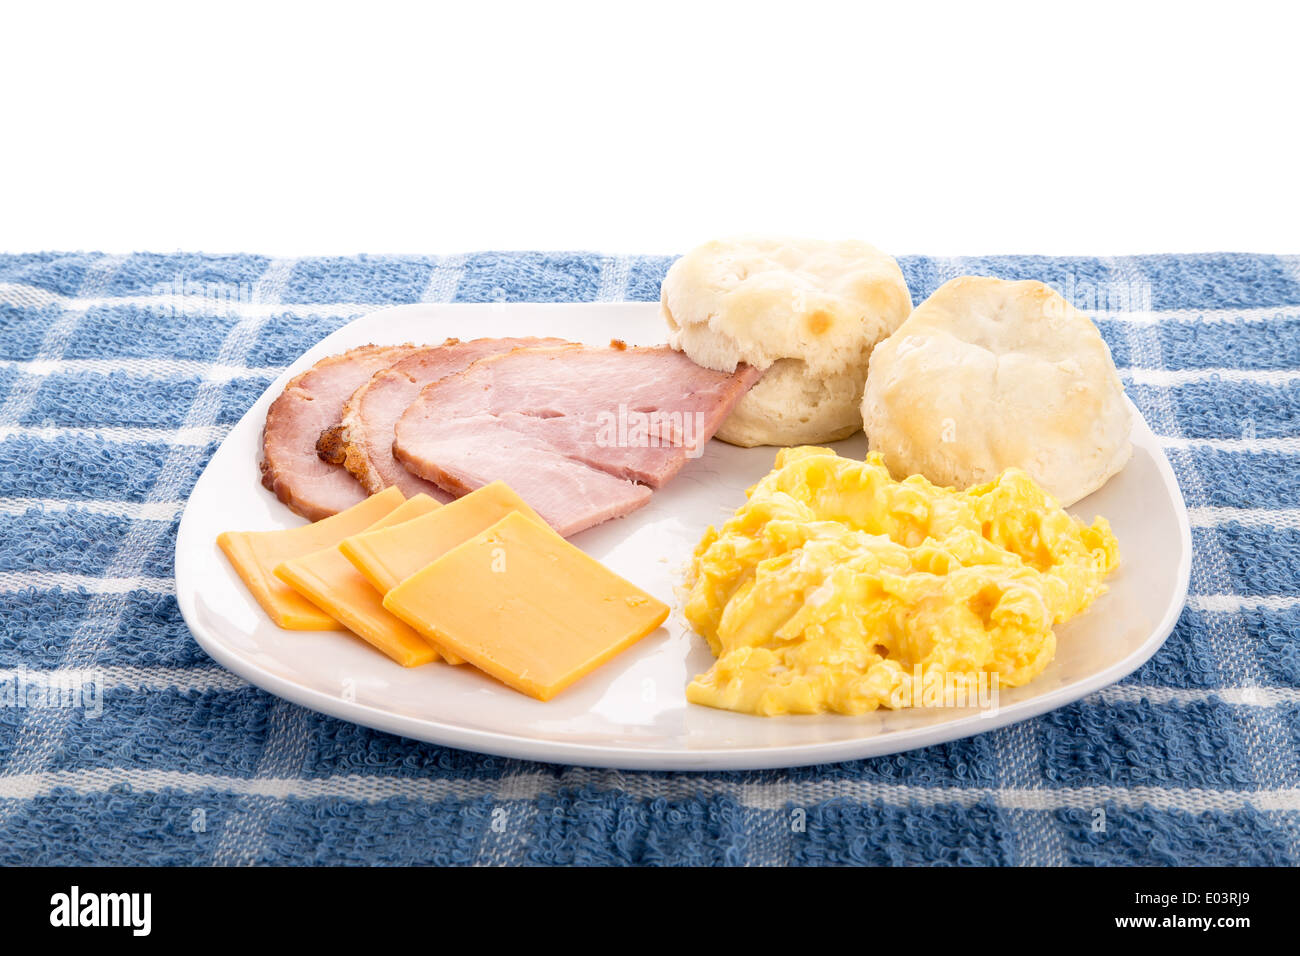 Un caldo, paese colazione a base di uova strapazzate, prosciutto a fette, fresche, biscotti caldi e formaggio a fette Foto Stock